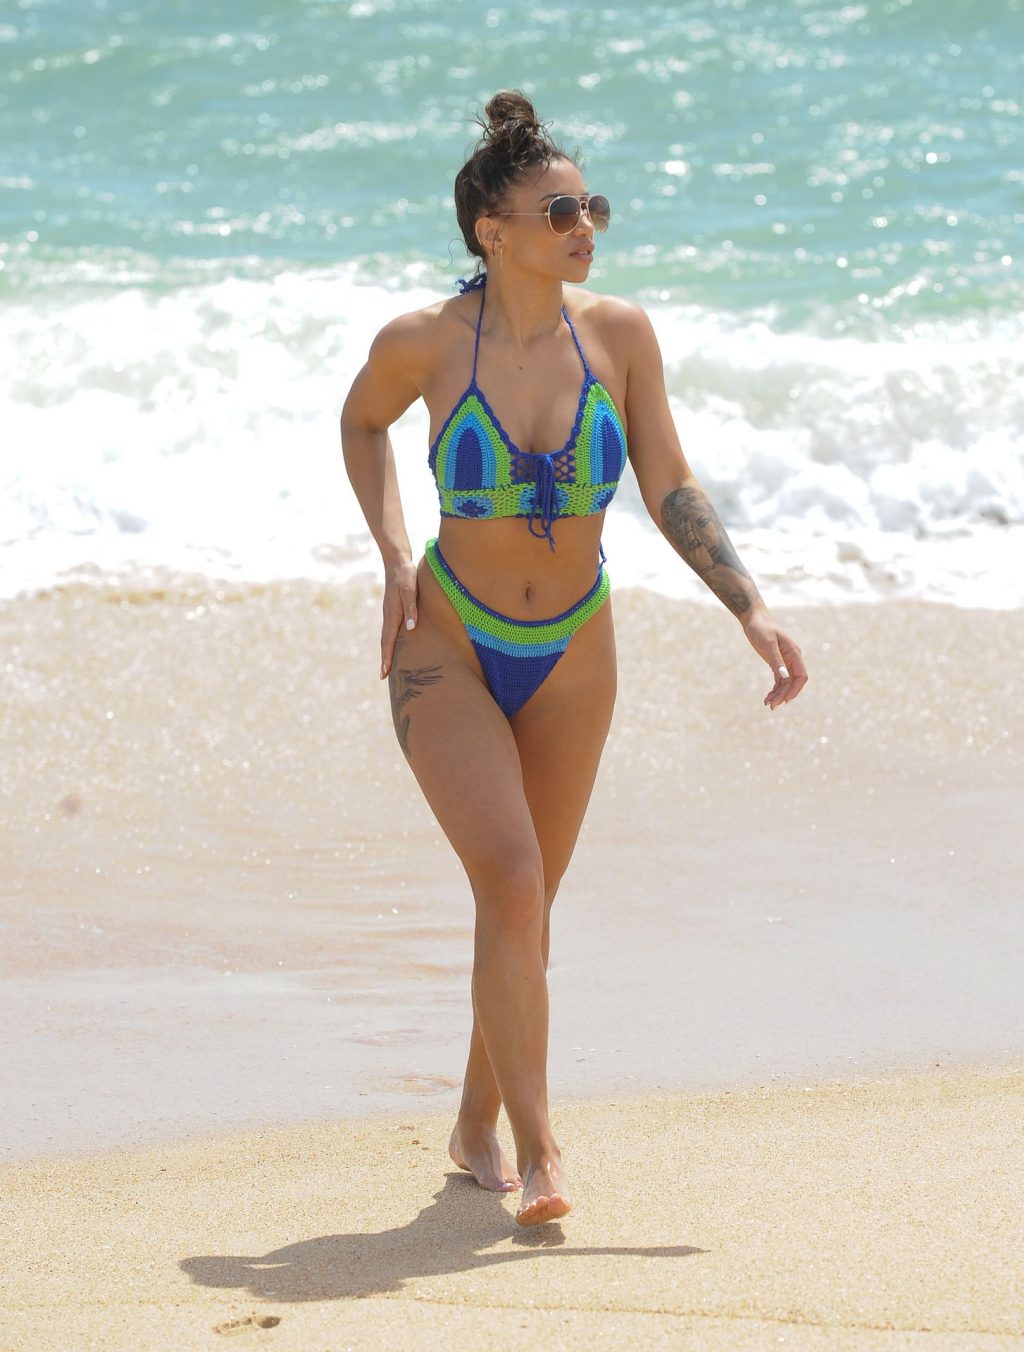 Sexy Kayleigh Morris Enjoys a Day on the Beach (18 Photos)